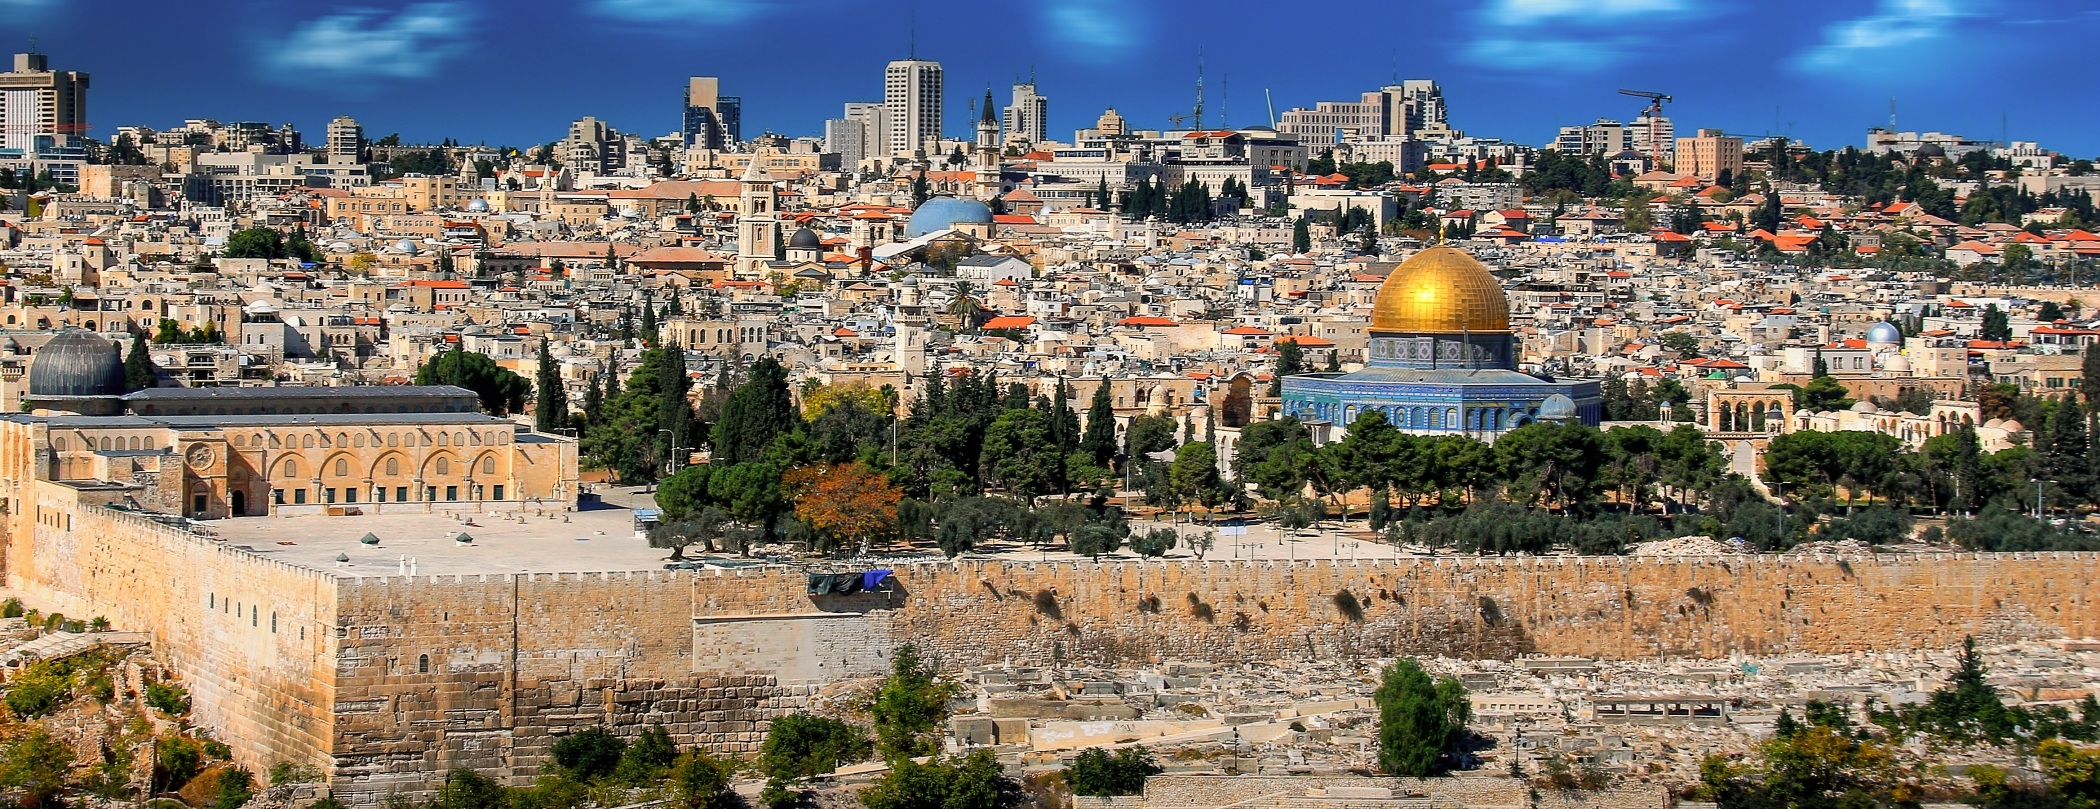 our top ten destinations bucket list #10 Israel